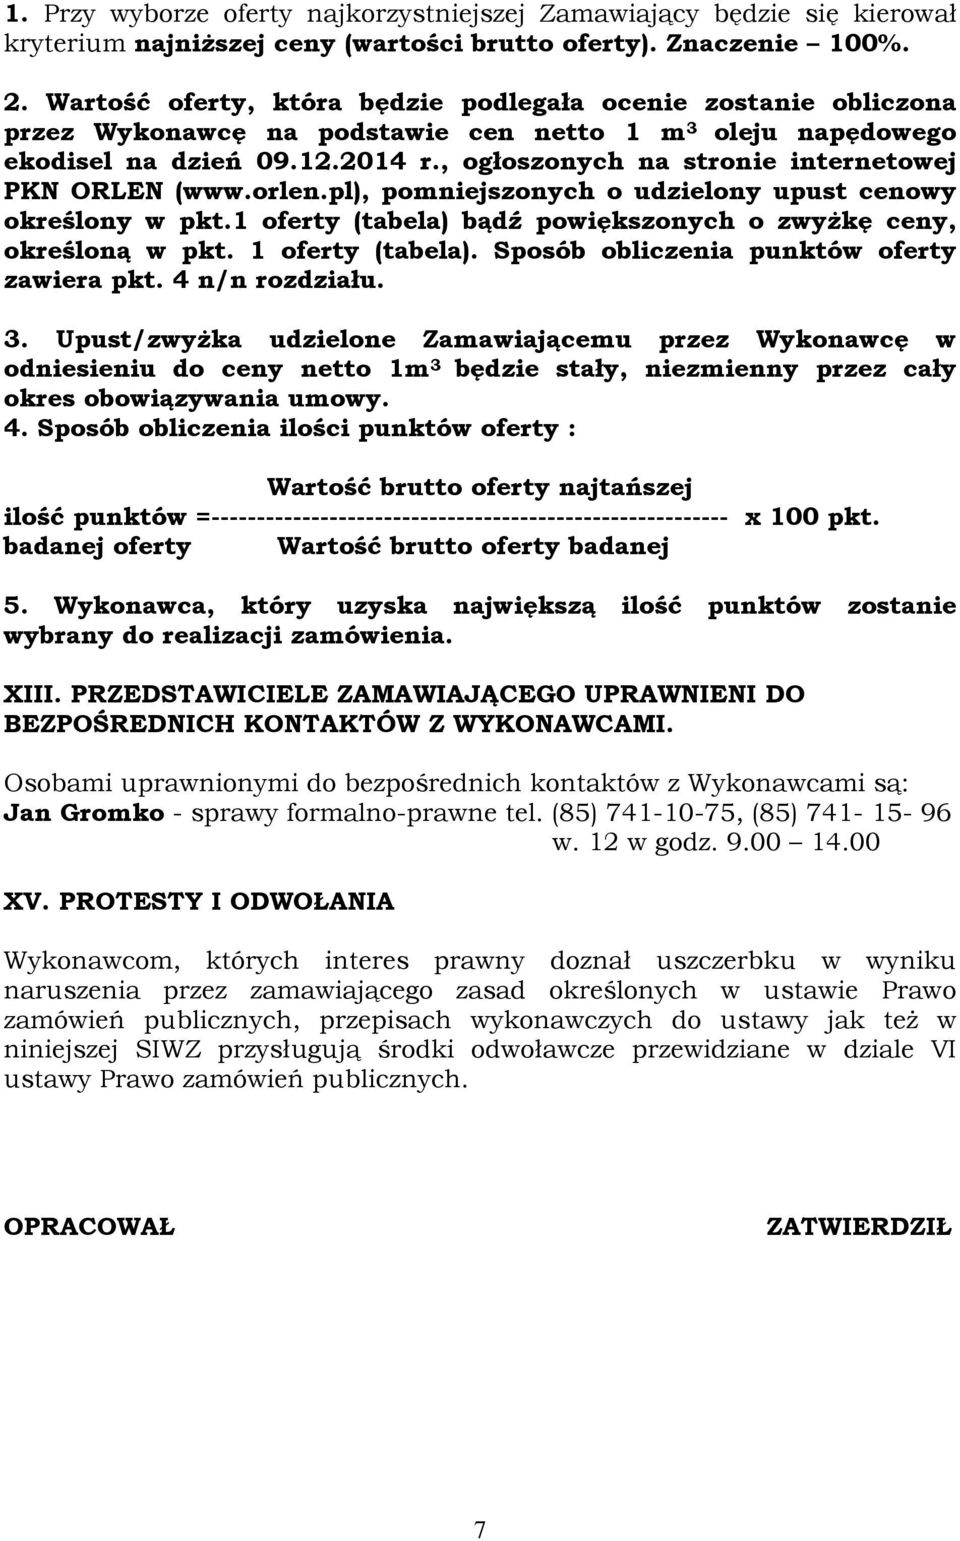 , ogłoszonych na stronie internetowej PKN ORLEN (www.orlen.pl), pomniejszonych o udzielony upust cenowy określony w pkt.1 oferty (tabela) bądź powiększonych o zwyżkę ceny, określoną w pkt.